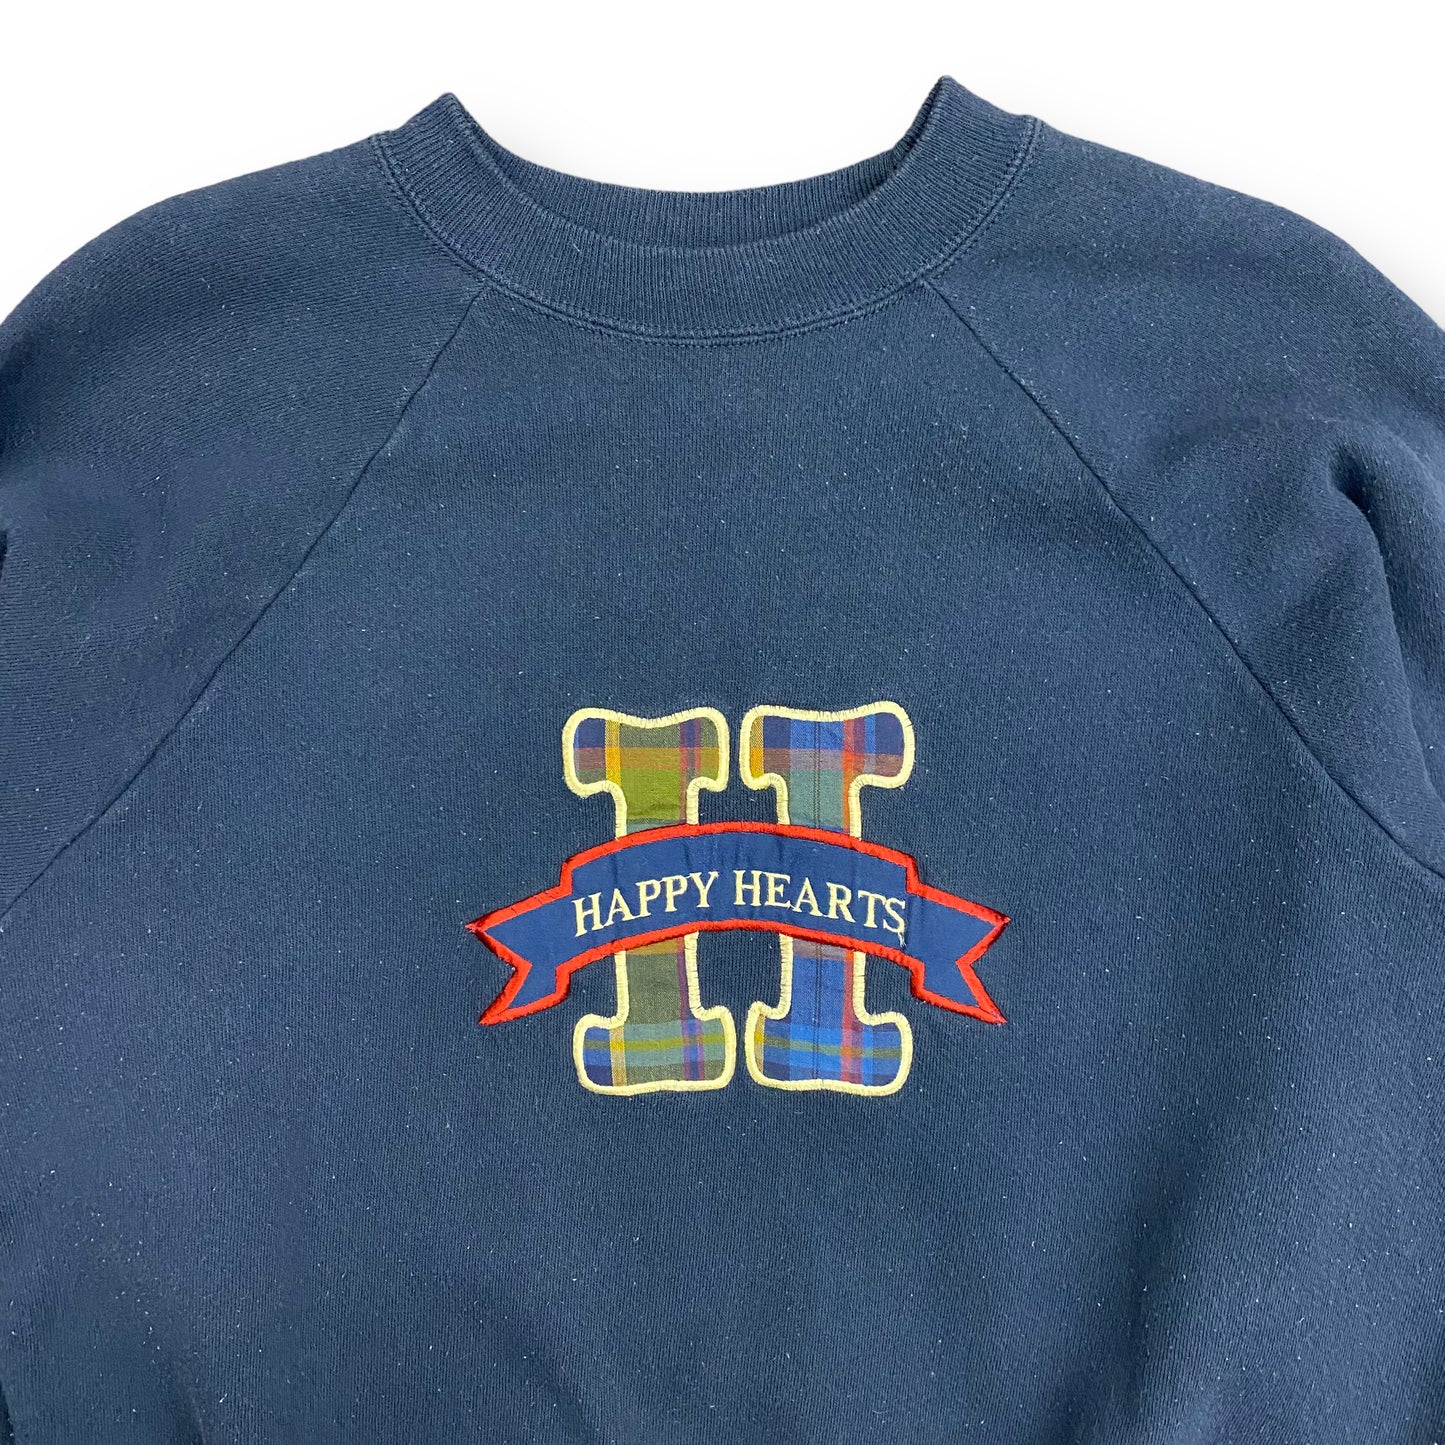 Vintage 90s Happy Hearts Navy Blue Raglan Crewneck Sweatshirt - Size Large